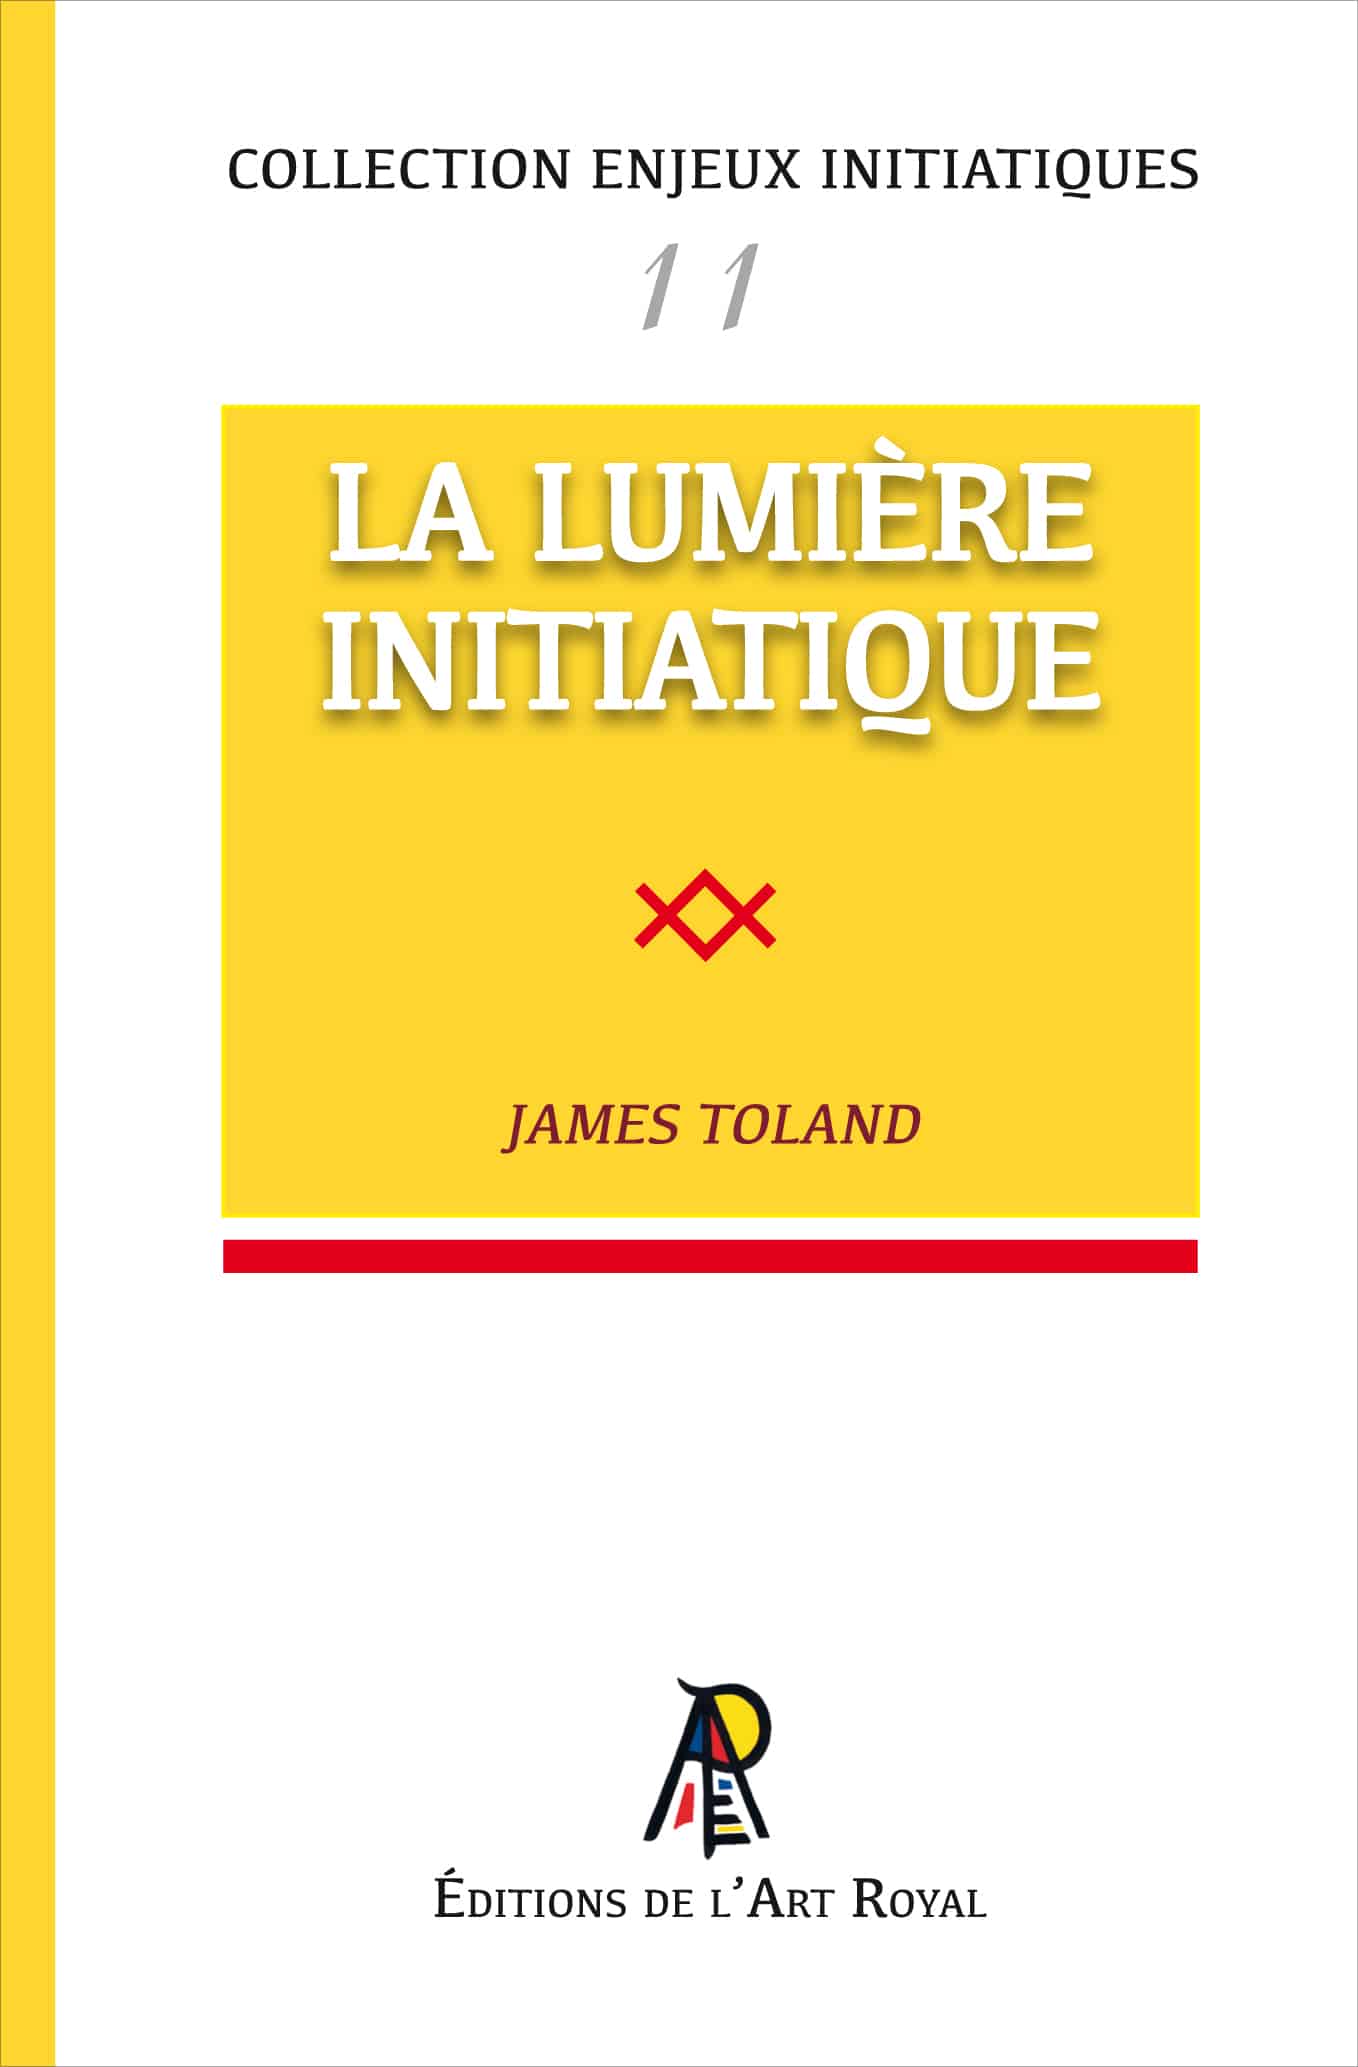 La Lumière Initiatique, James Toland